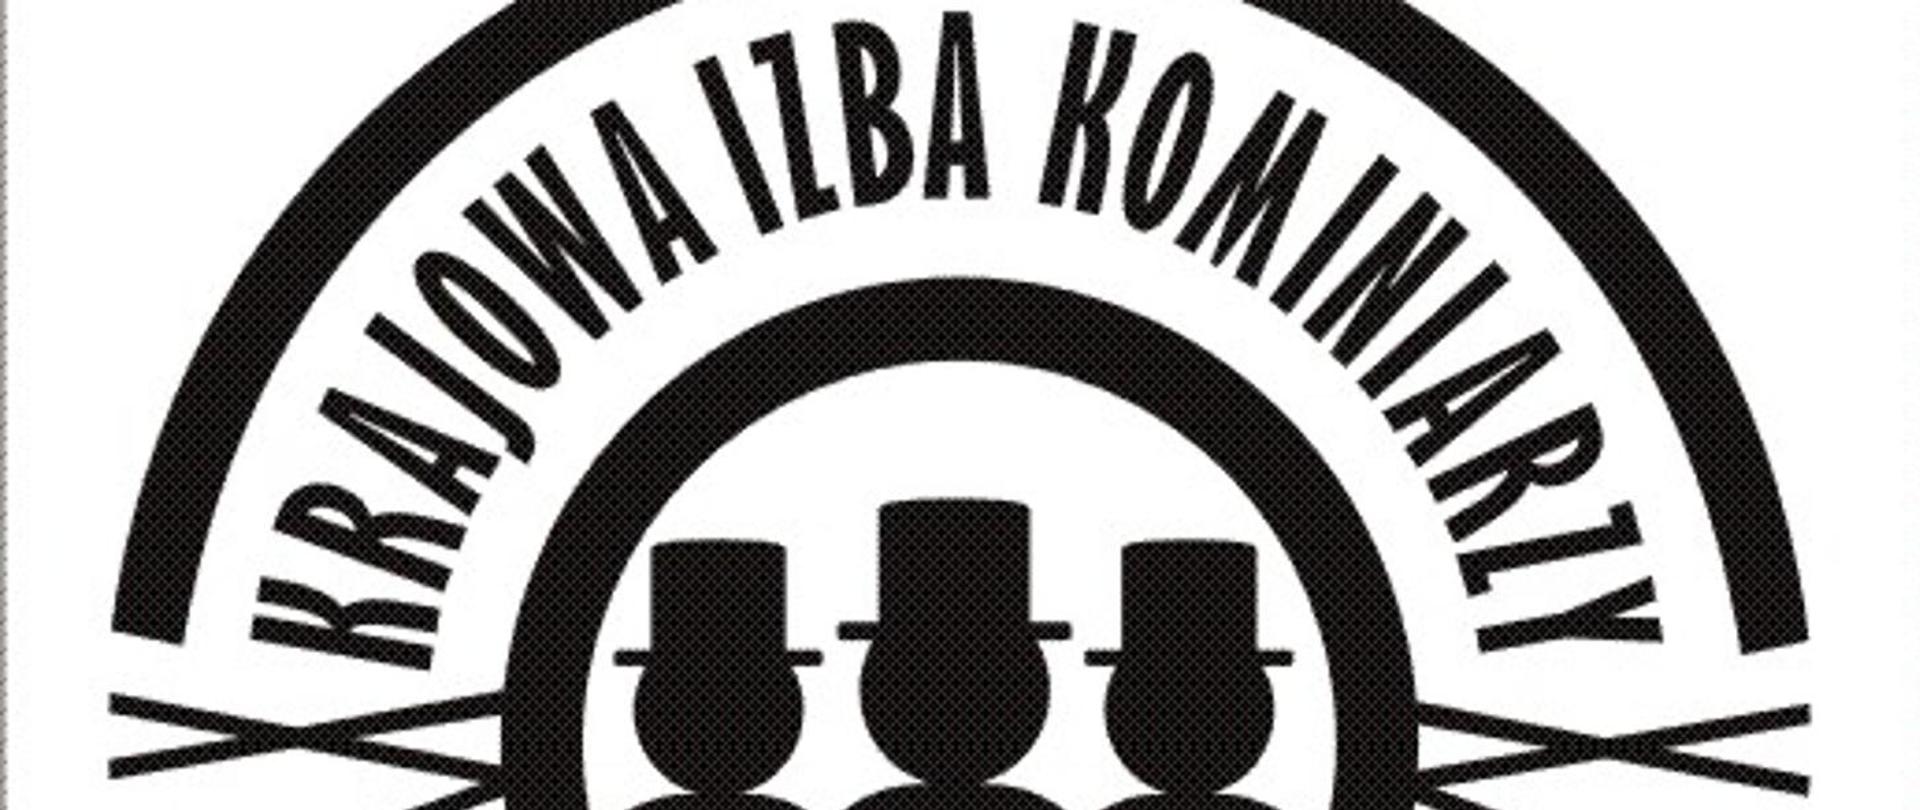 Logo Krajowej Izby Kominiarzy - trzech kominiarzy wpisanych w okrąg i napis krajowa izba kominiarzy